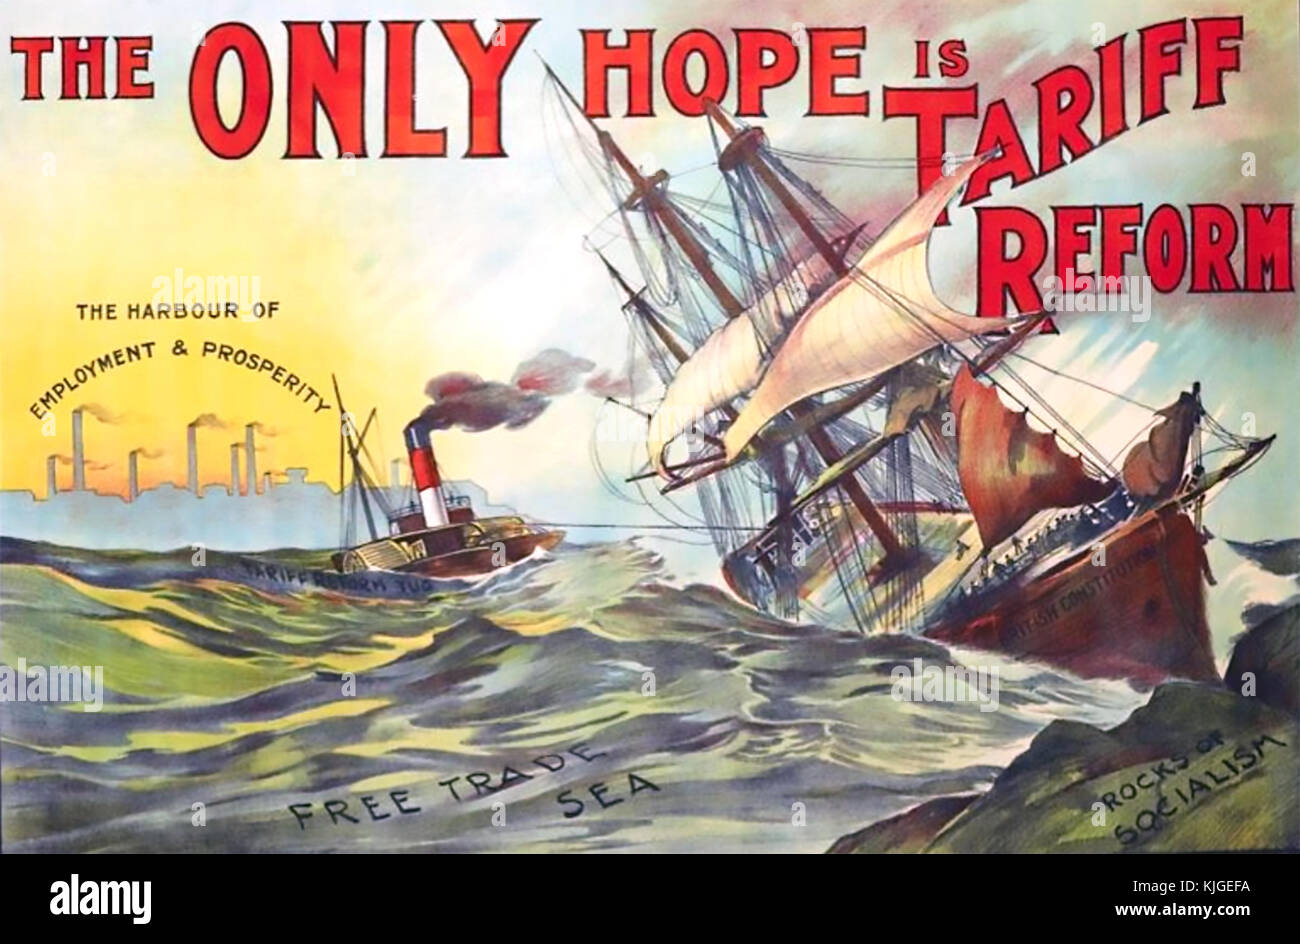 Affiche de libre-ÉCHANGE publiée par le Parti conservateur pour l'élection générale de 1906 qui a été gagnée par le Parti libéral. Banque D'Images